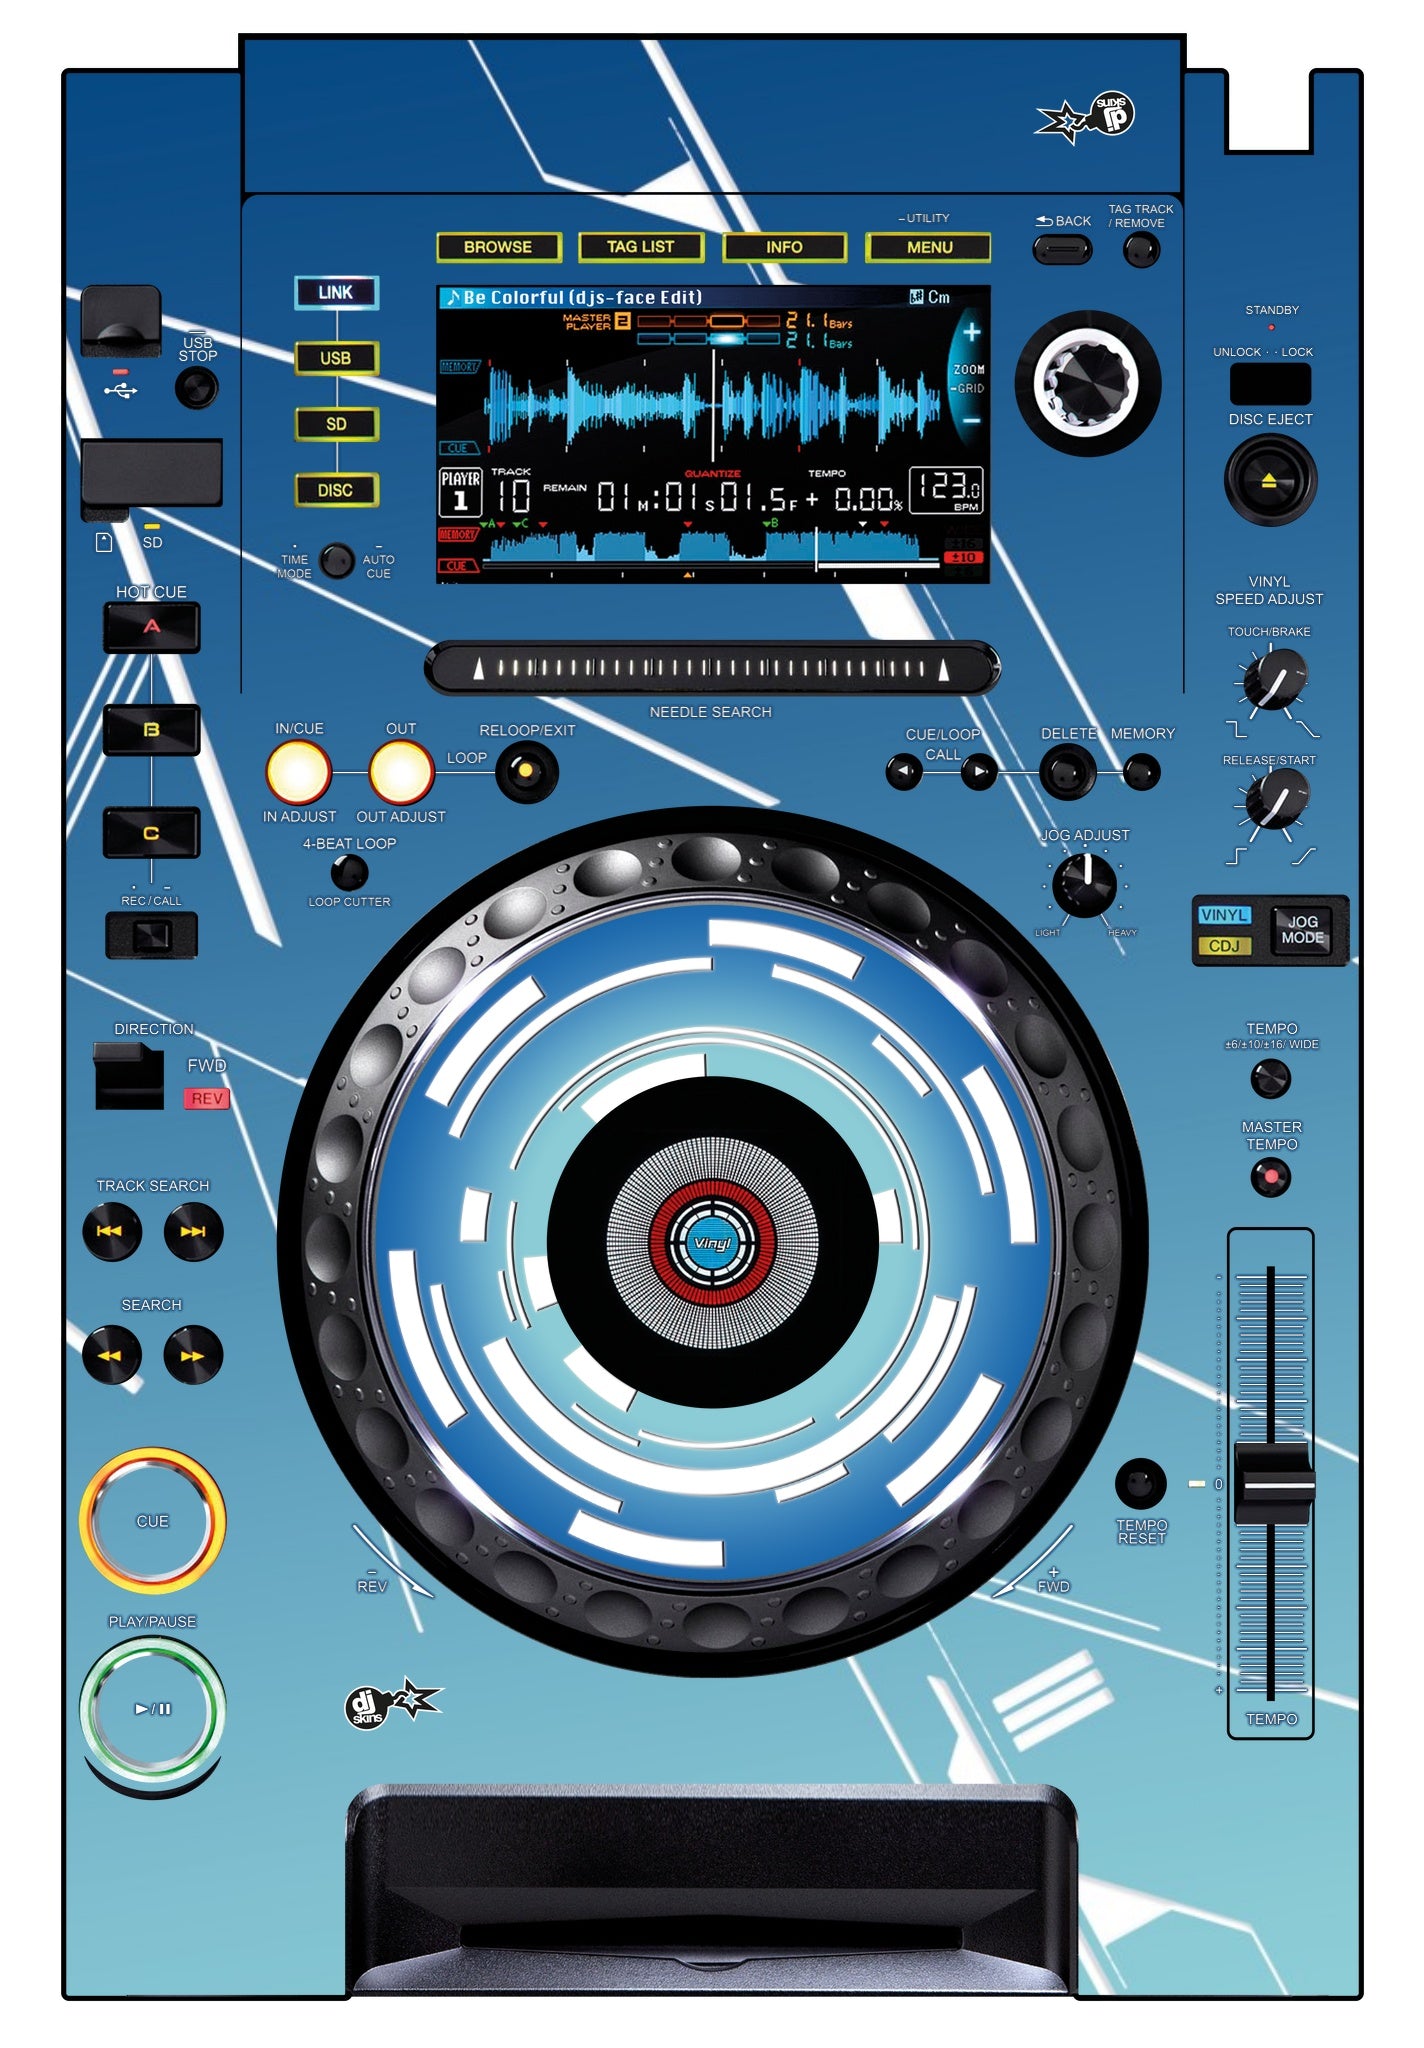 Pioneer DJ CDJ 2000 Skin Constructor Blue